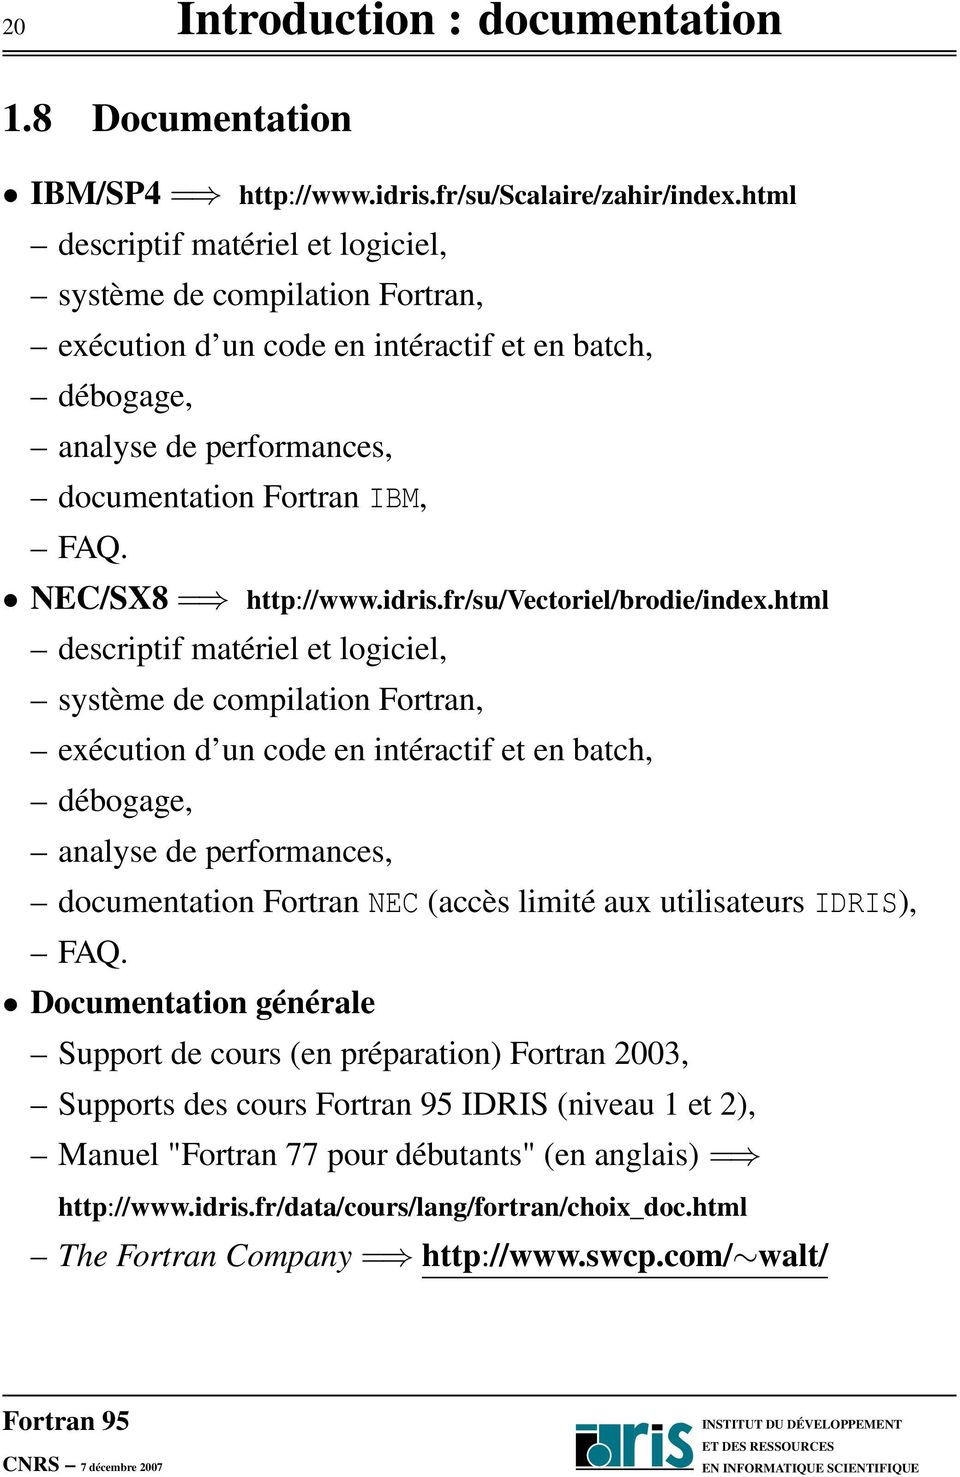 NEC/SX8 = http://www.idris.fr/su/vectoriel/brodie/index.